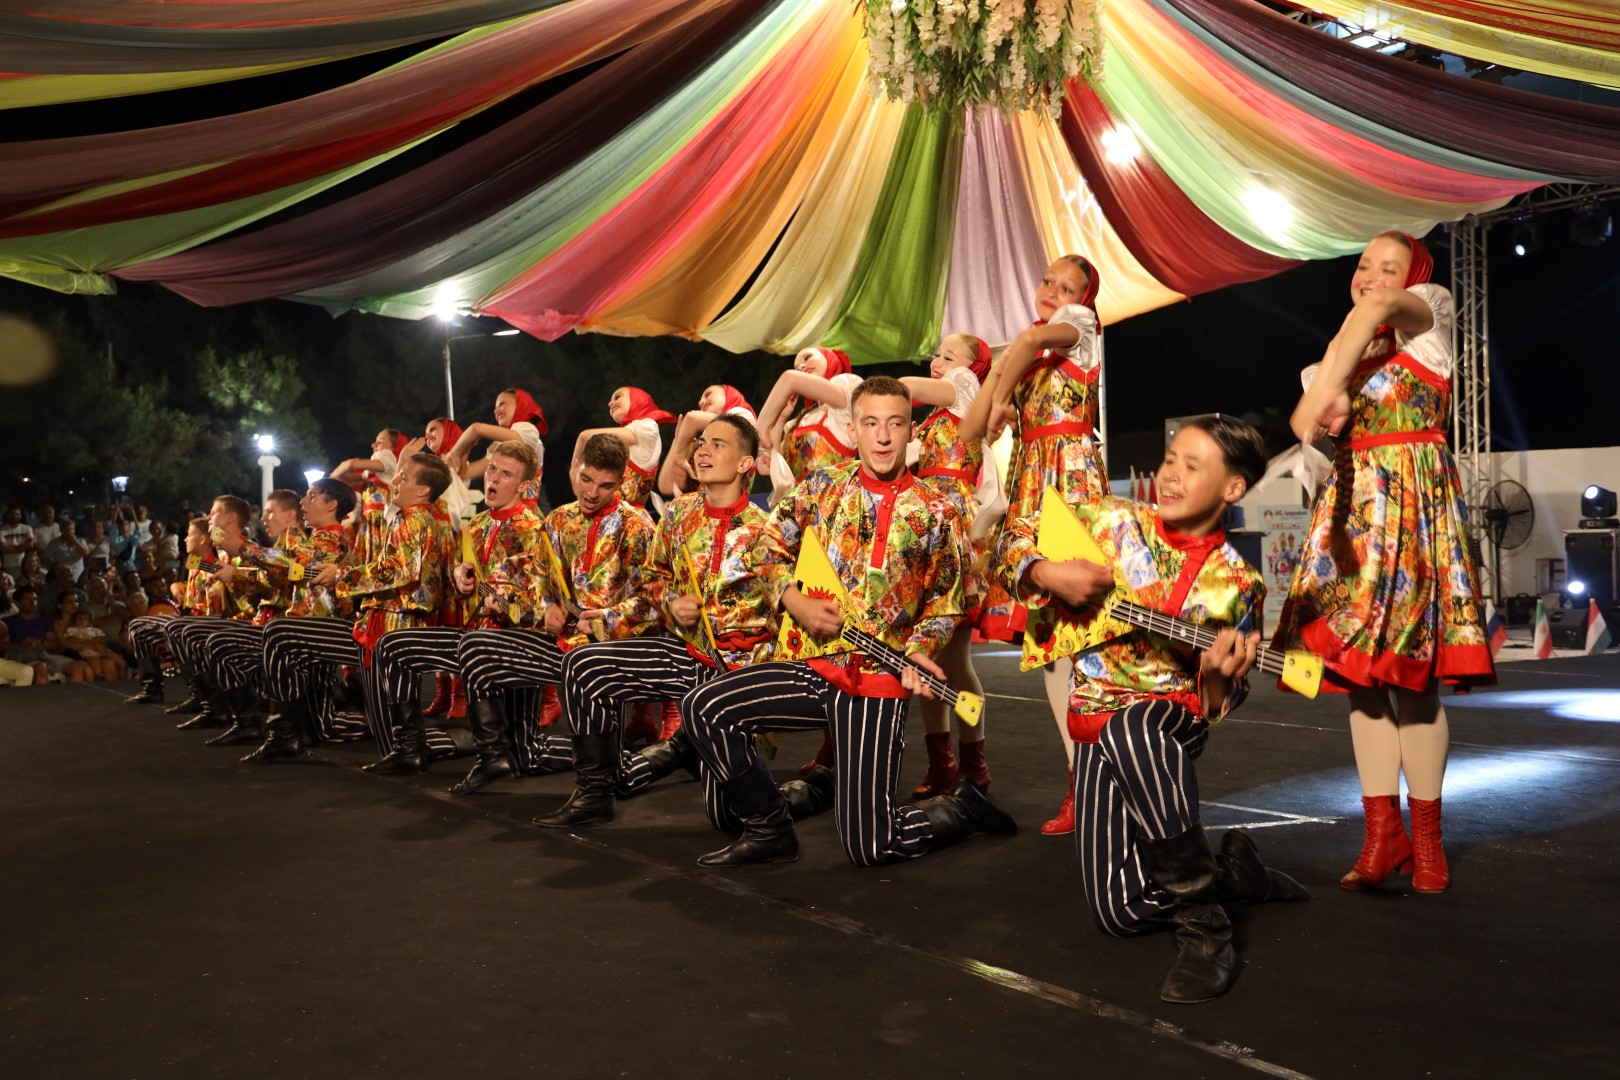 İskele Festivali, uluslararası halk dansları ile devam ediyor